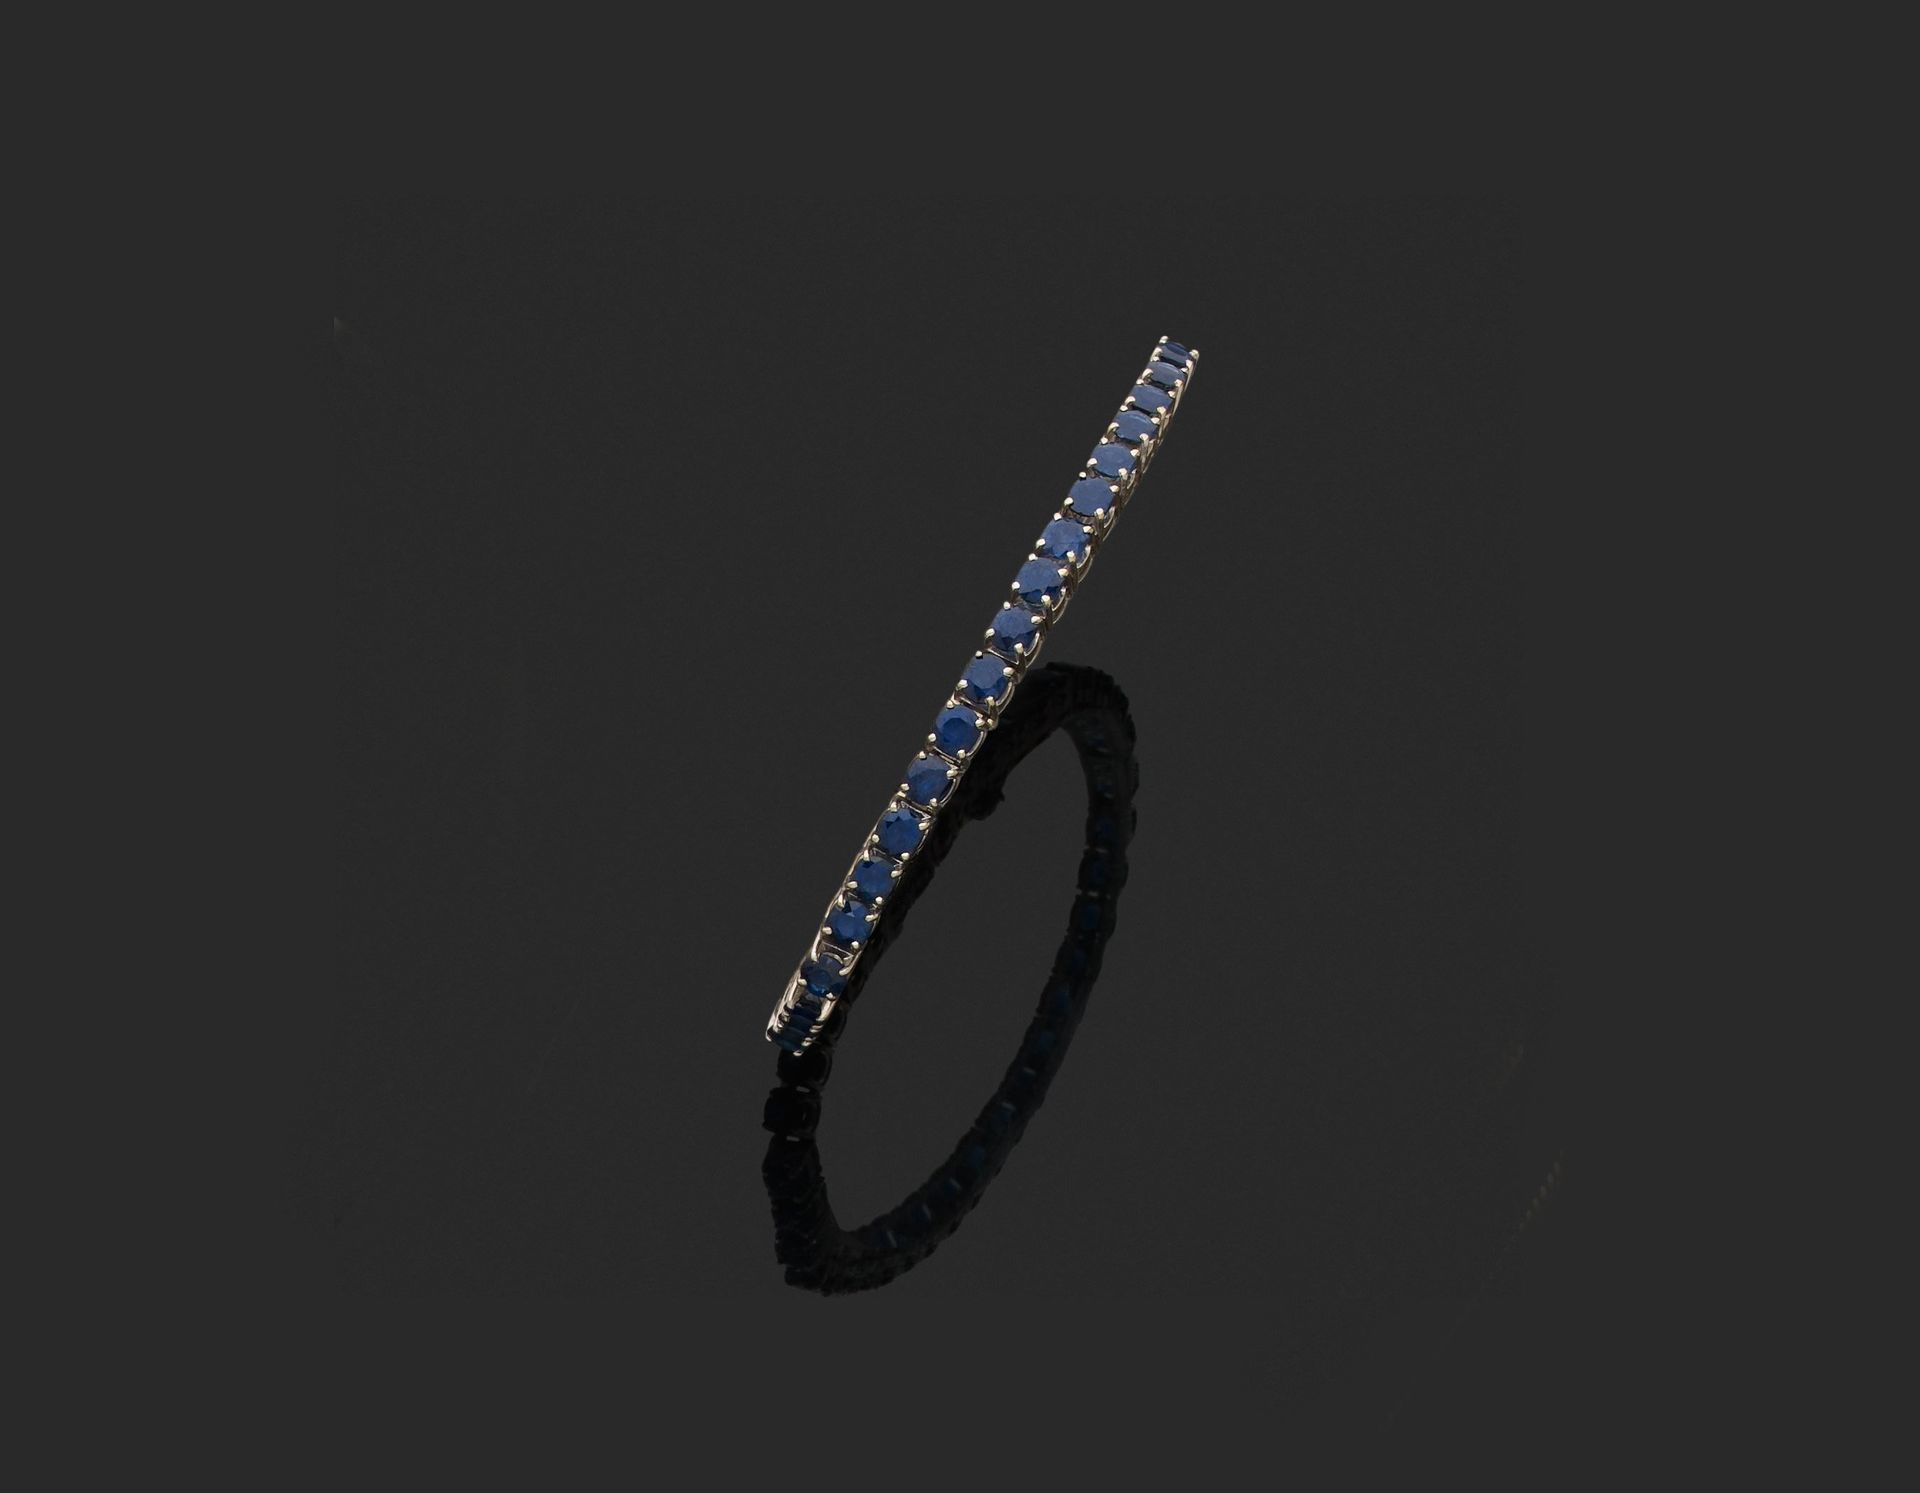 Null 法国作品 
铰链式手镯 

750千分之一白金，镶嵌一排38颗圆形蓝宝石。 

长约18厘米。 
毛重：22.2克。